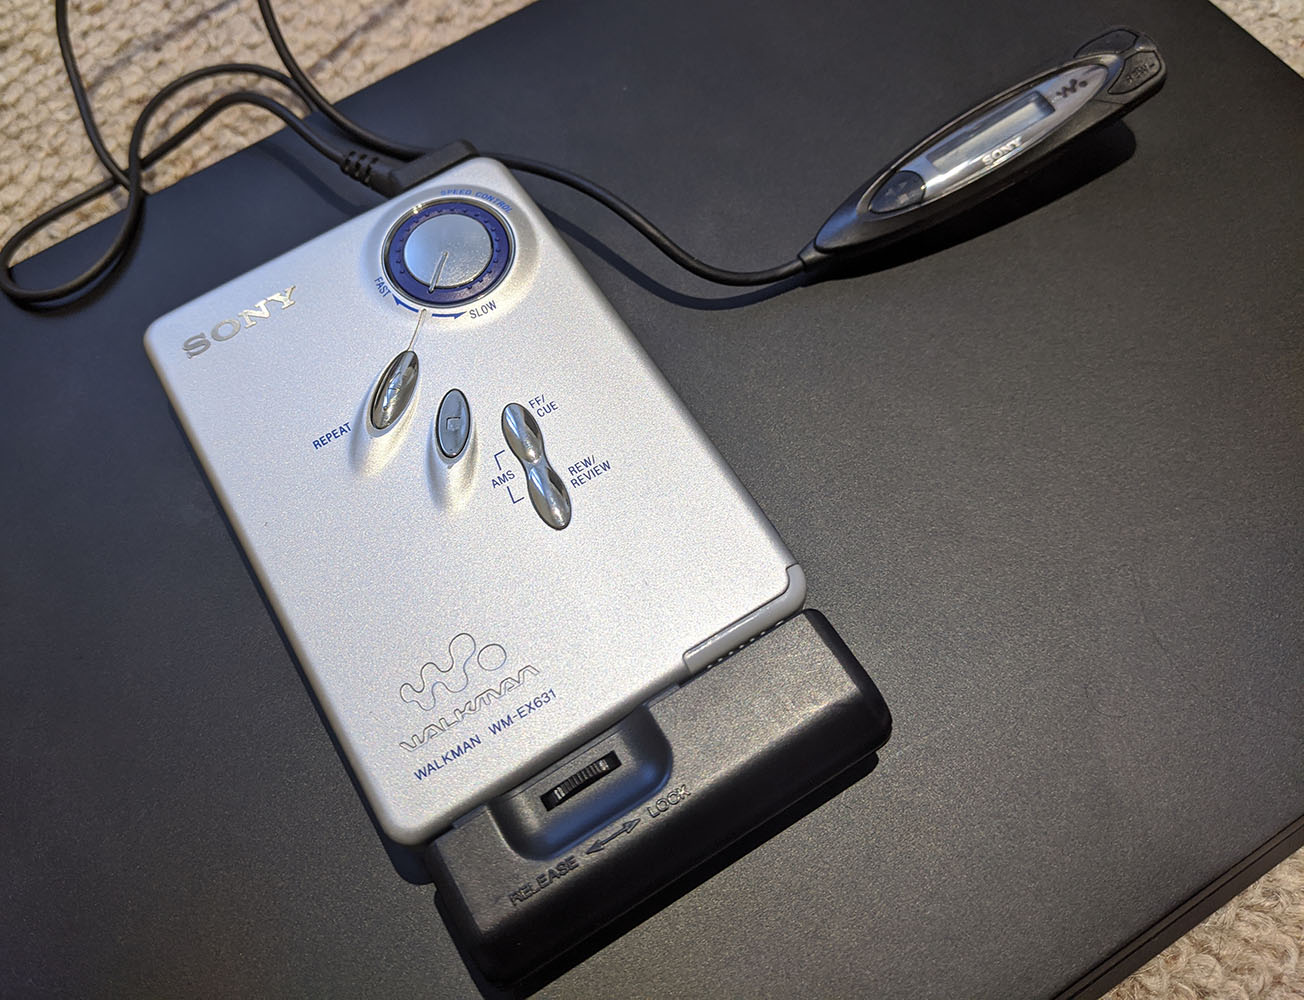 Sony Walkman WM-EX631